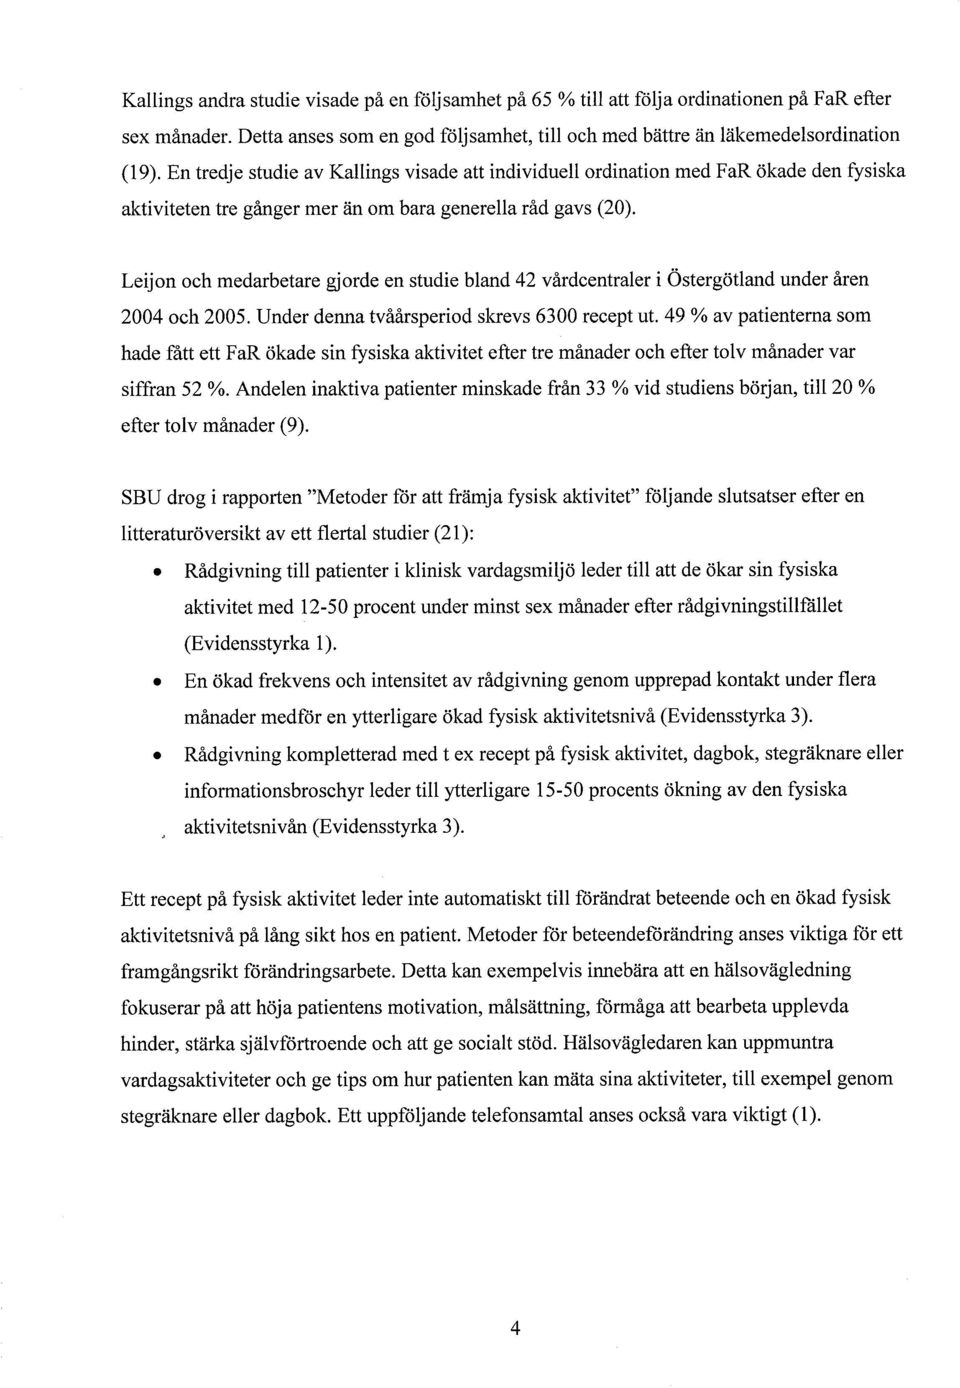 Leijon och medarbetare gjorde en studie bland 42 vårdcentraler i Östergötland under åren 2004 och 2005. Under denna tvåårsperiod skrevs 6300 recept ut.